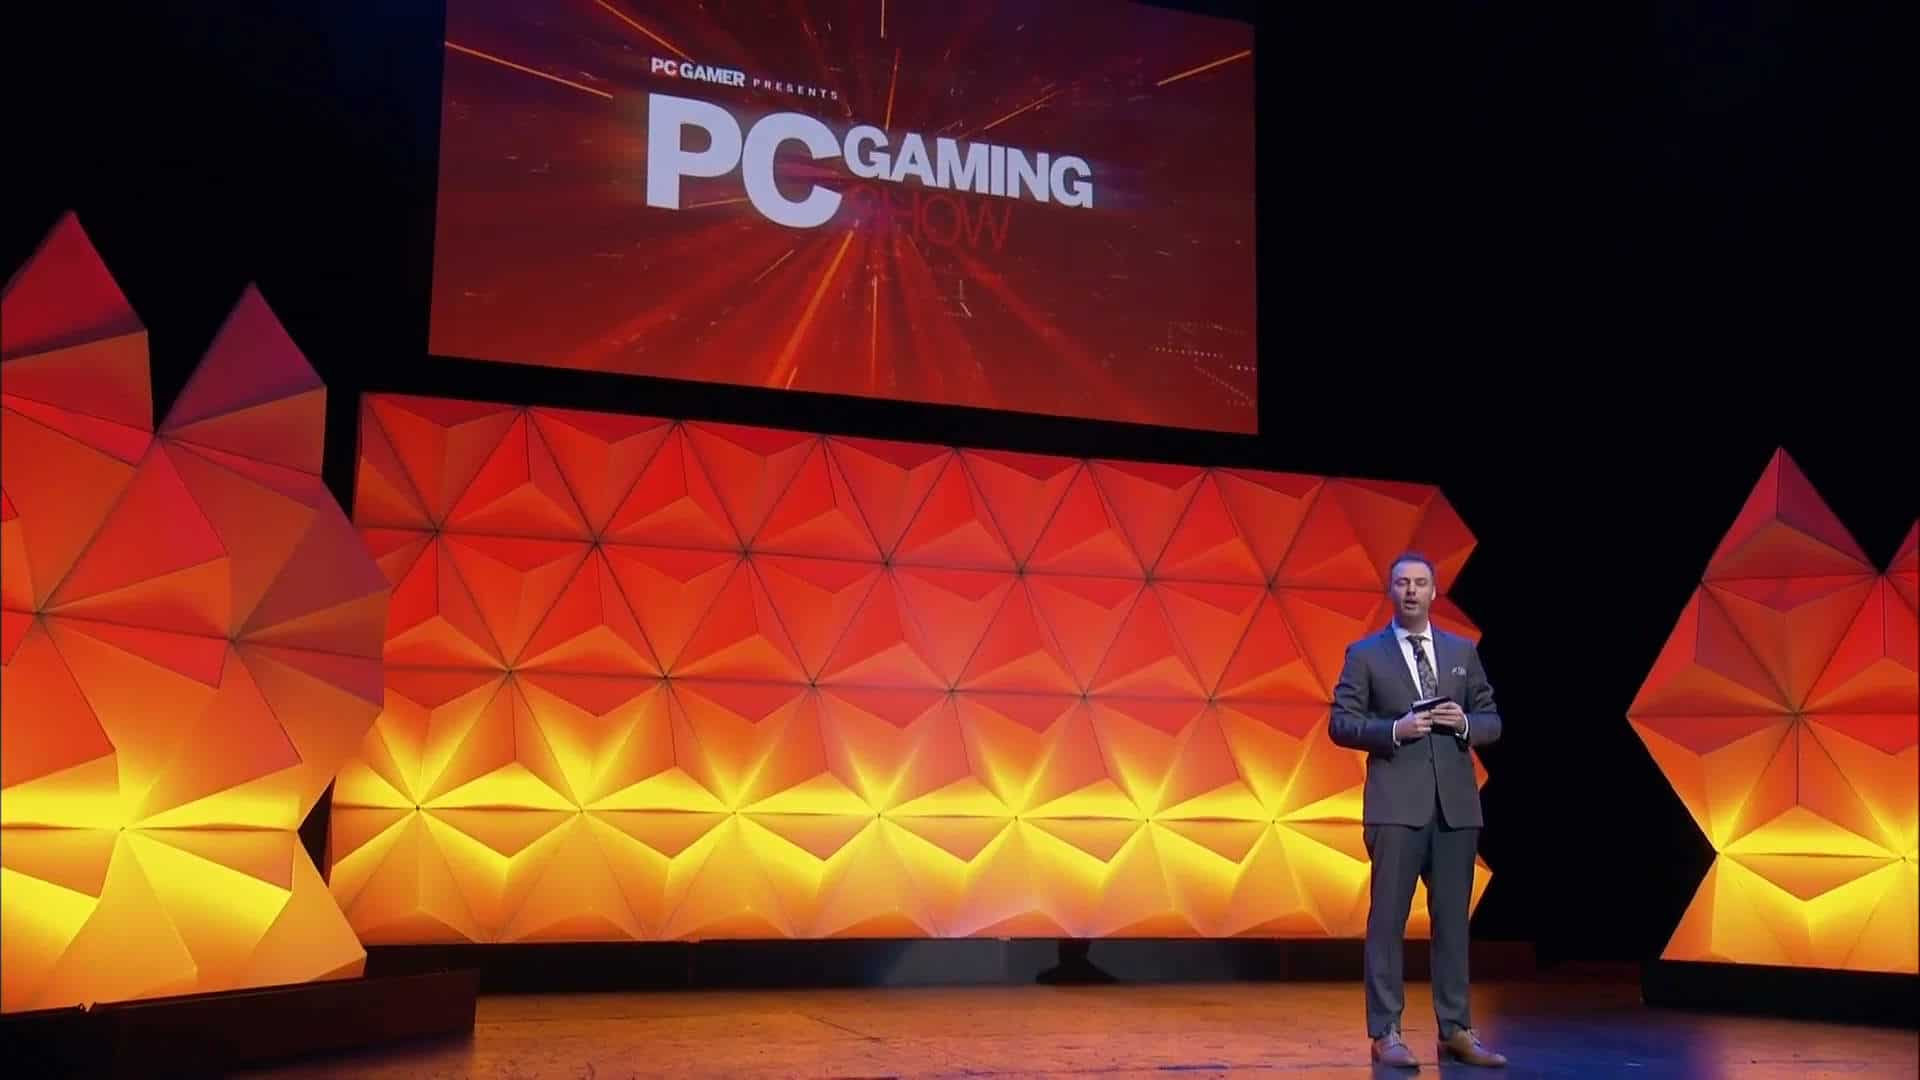 El evento digital PC Gaming Show 2020 se llevara a cabo este 6 de Junio